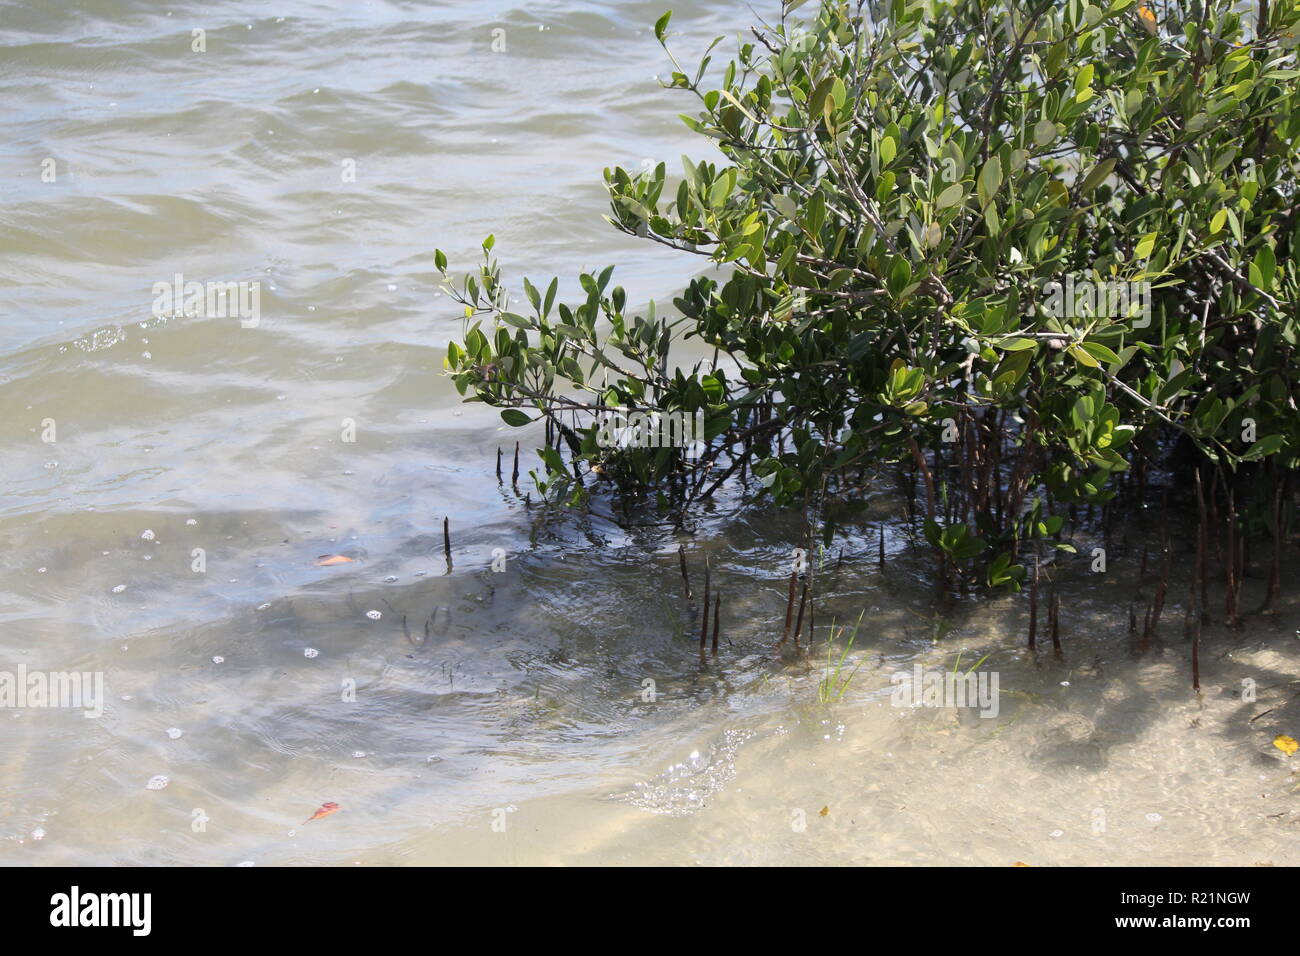 Una mangrovia al bordo dell'acqua Foto Stock